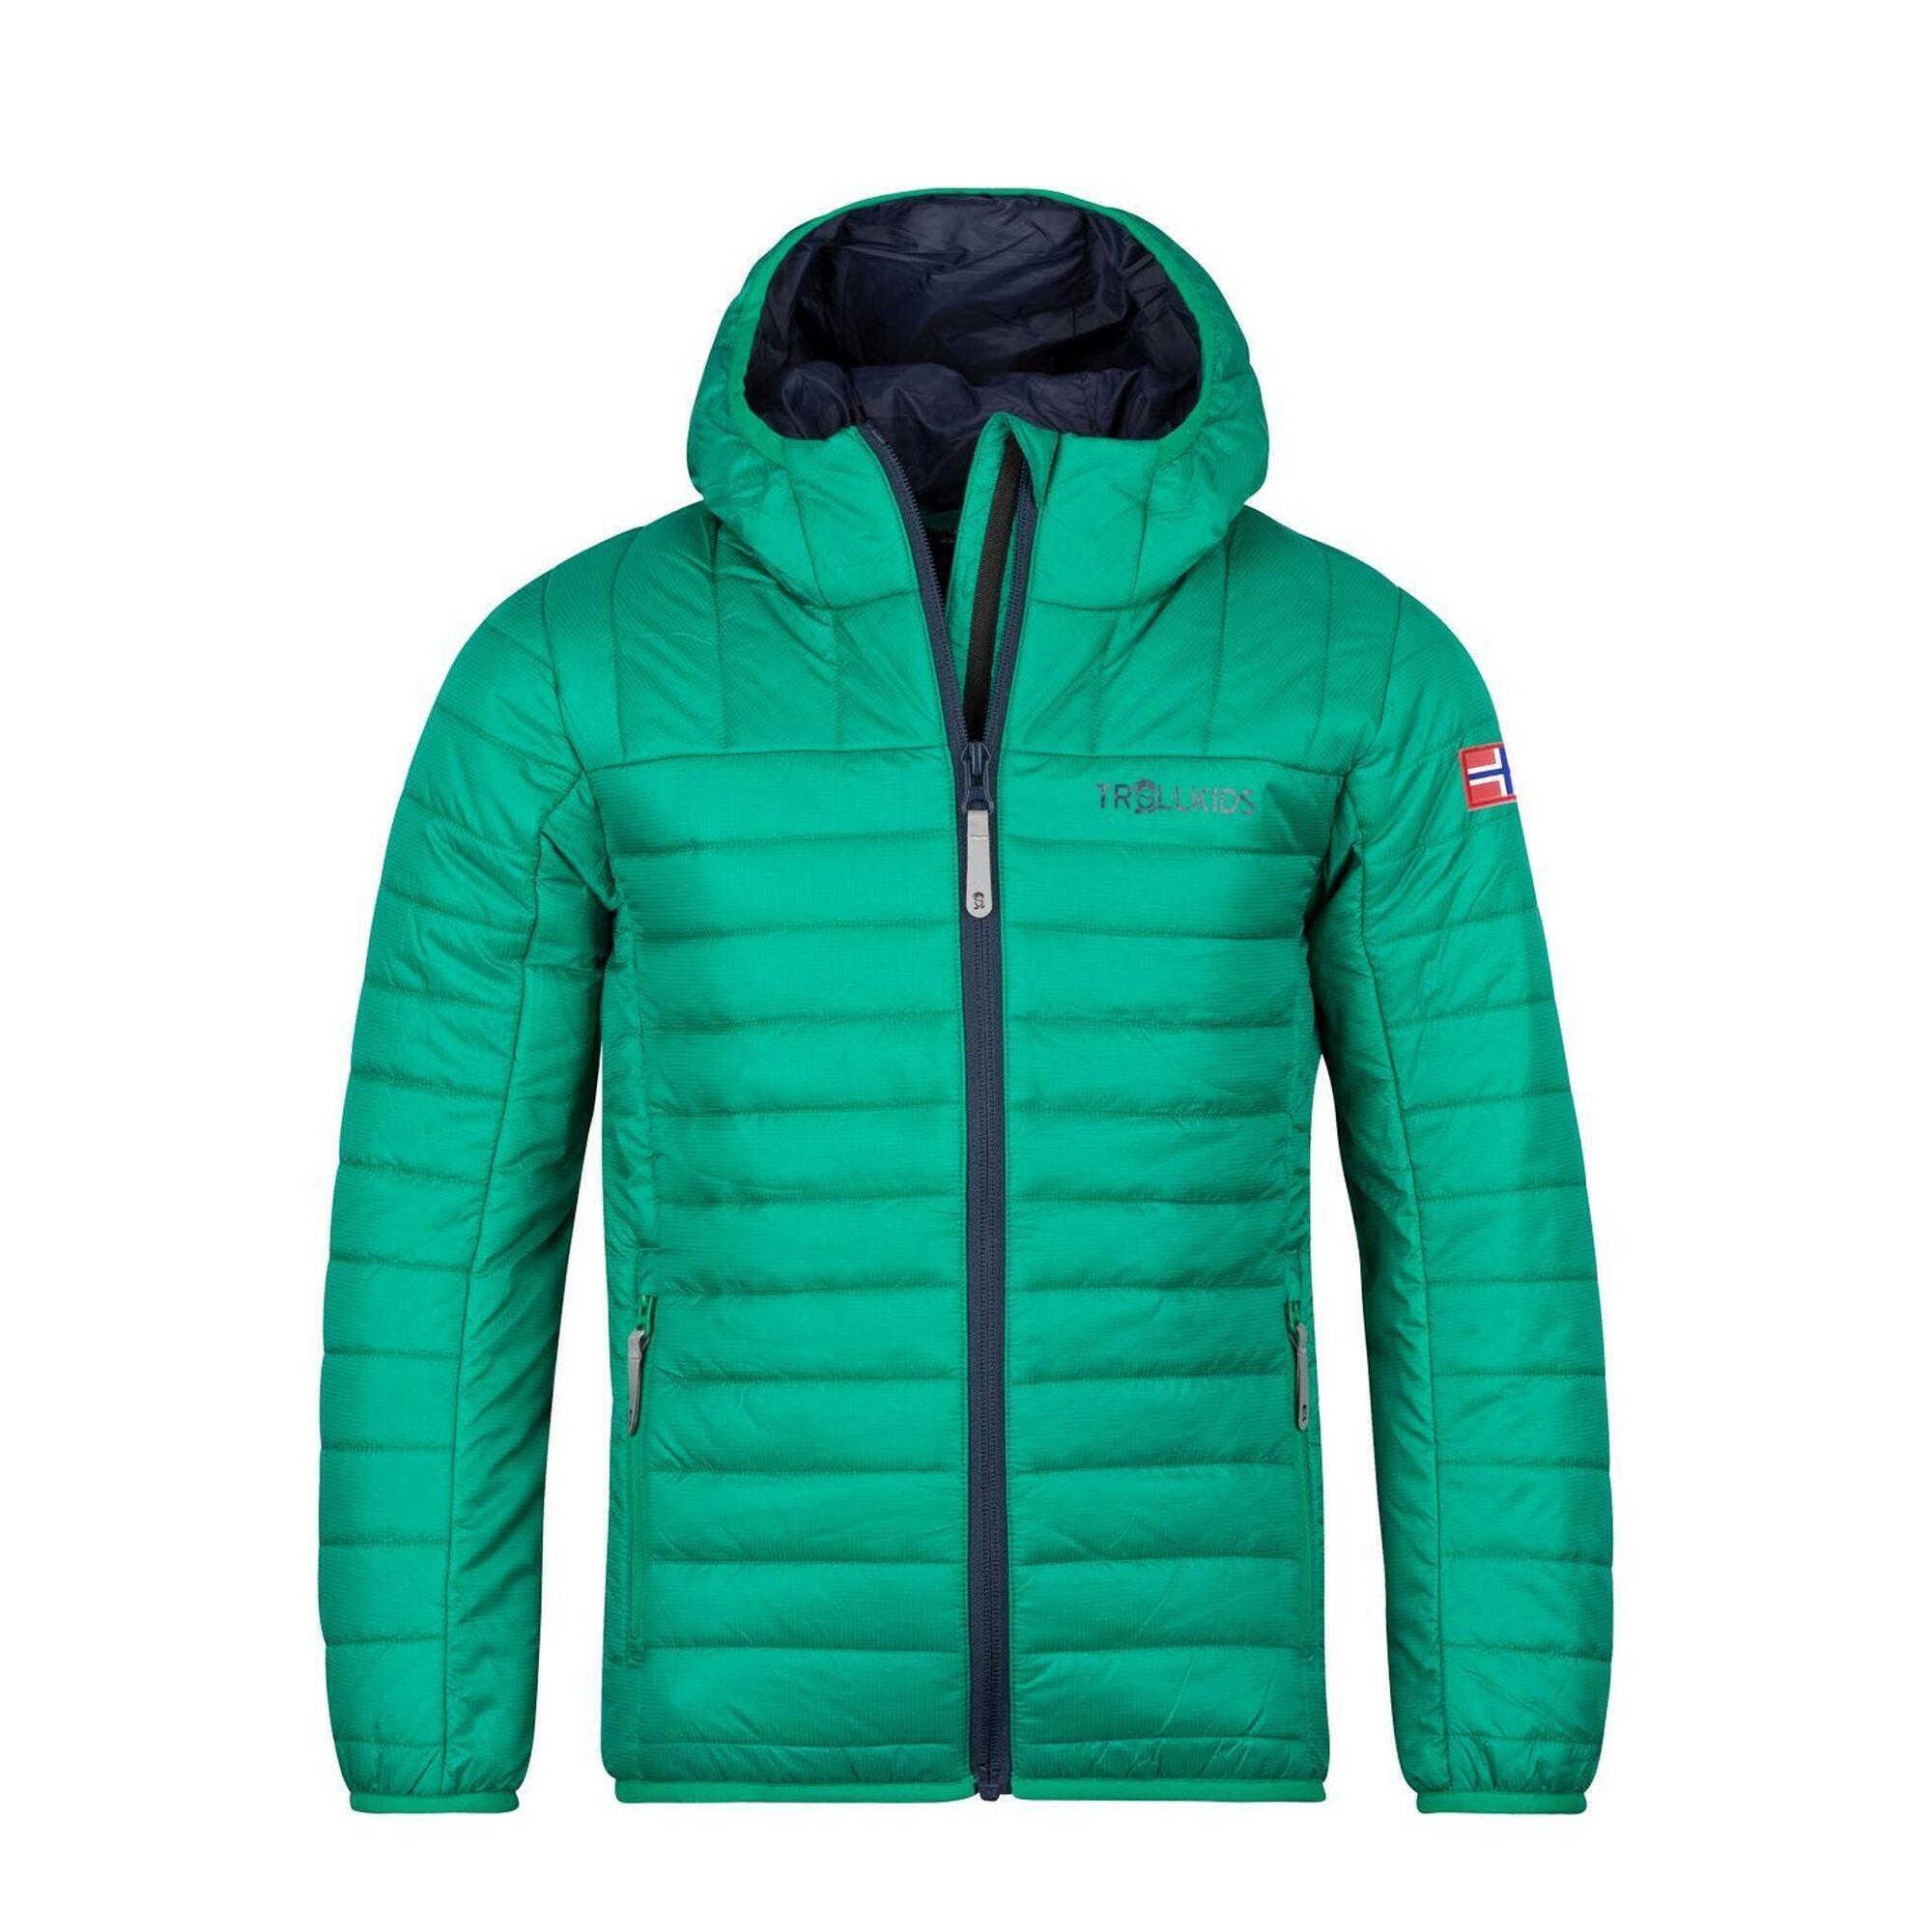 Куртка Trollkids Eikefjord, темно-зеленый/темно-синий куртка стеганая средней длины с пришитым капюшоном зимняя l синий